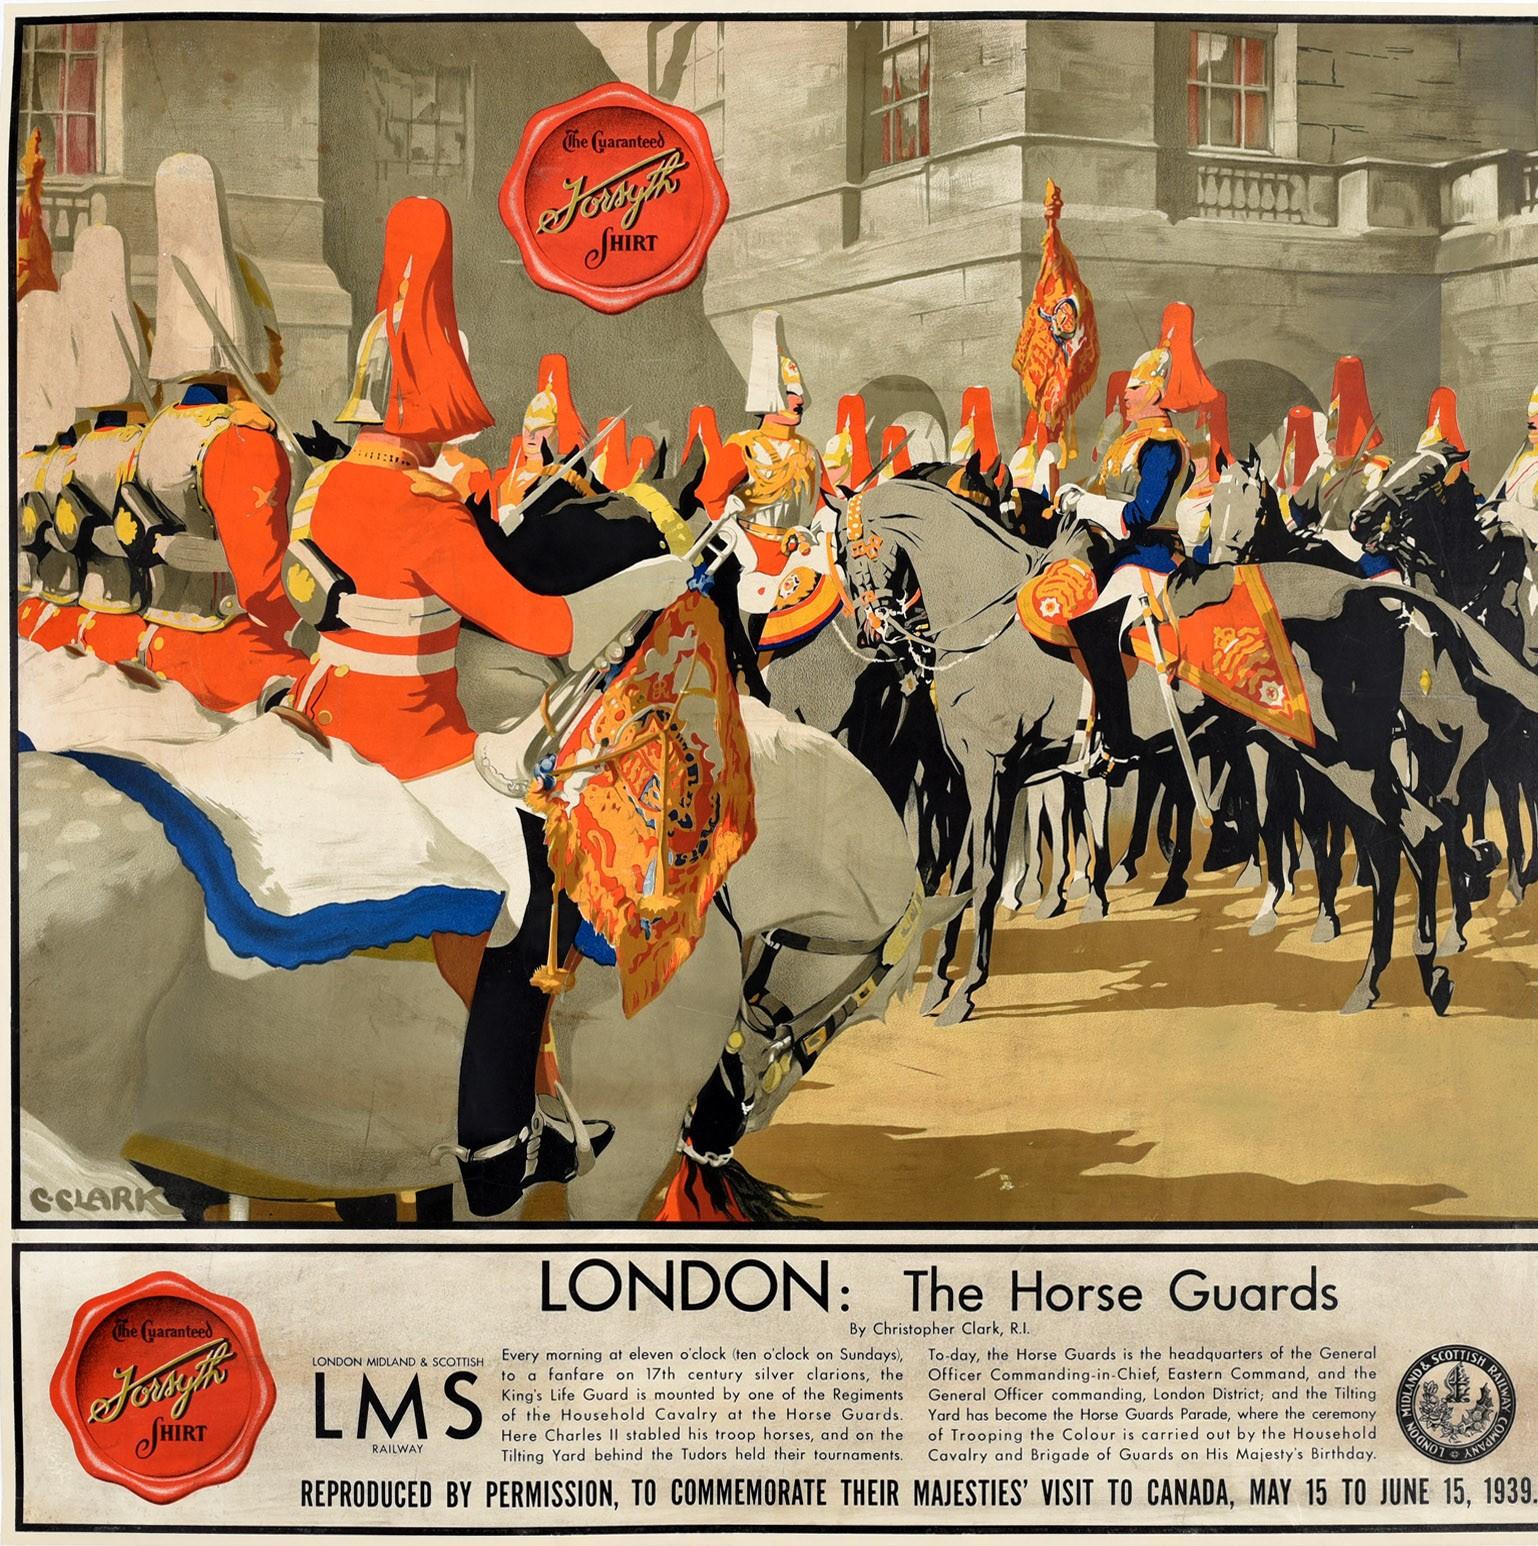 Original-Plakat mit dem Titel London The Horse Guards, das ursprünglich von der LMS London Midland and Scottish Railway herausgegeben und 1939 vom Ausstatter FW FORSYTH Ltd (gegründet 1872) neu aufgelegt wurde - Reproduktion mit Genehmigung zum